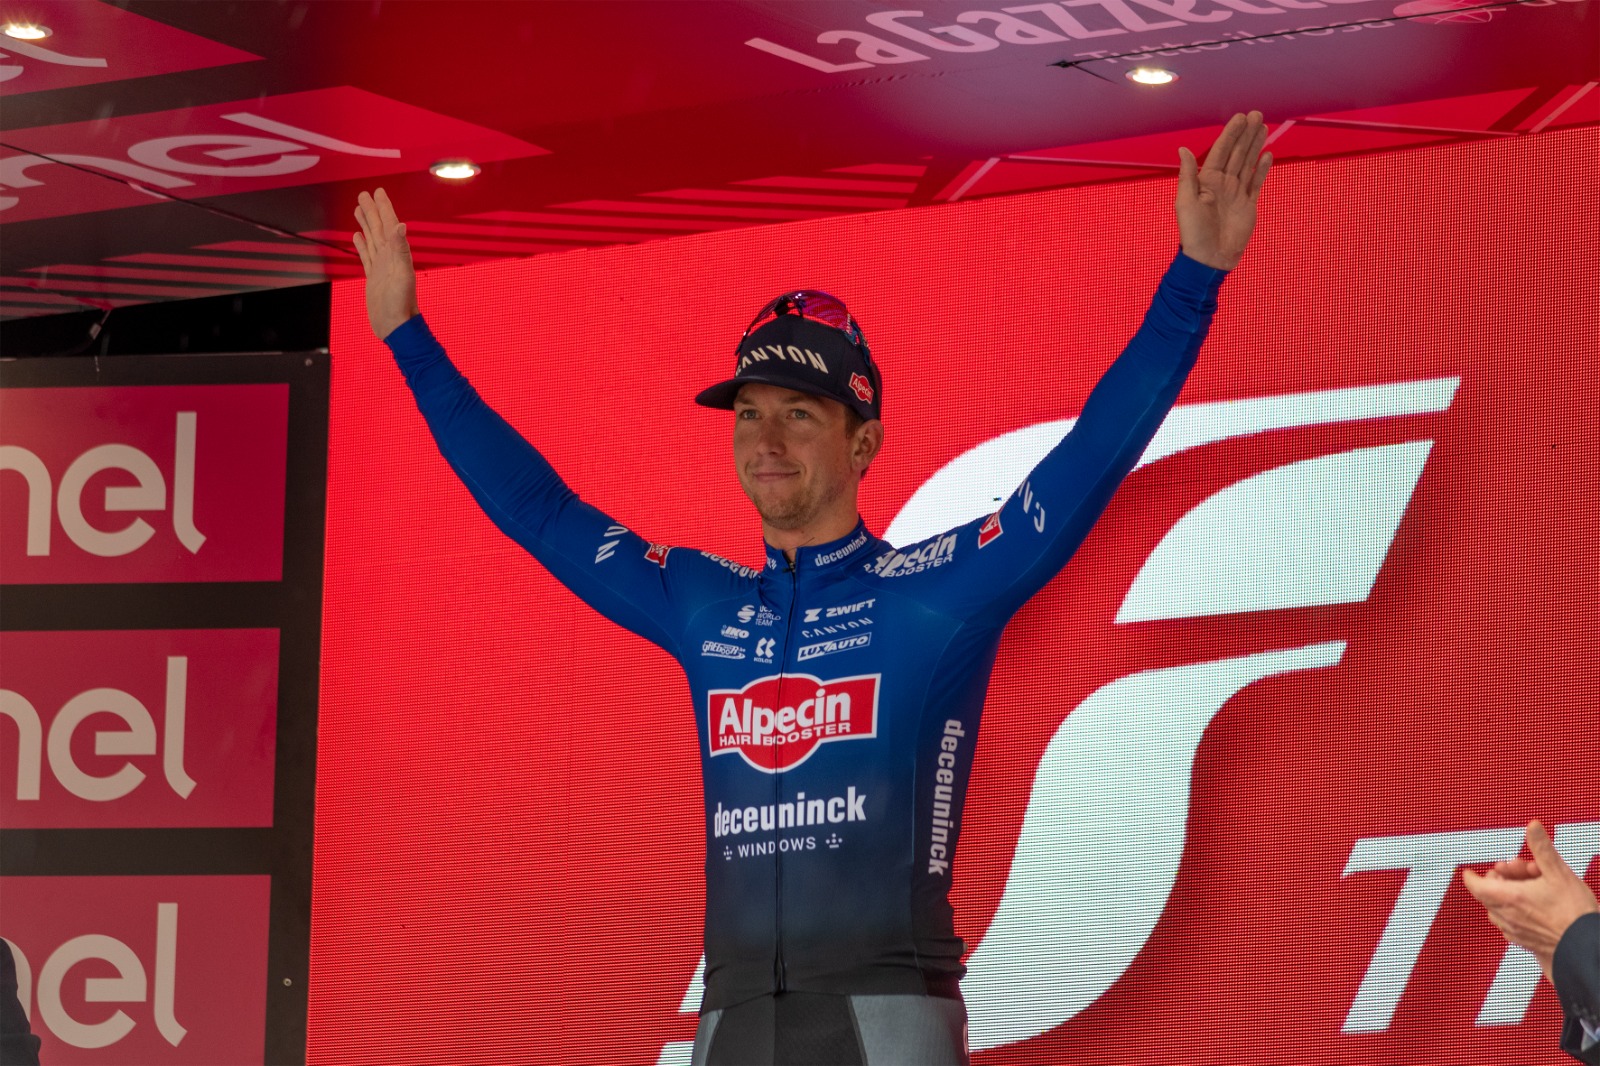 Giro d’Italia, Groves vince la quinta tappa ma tre cadute condizionano la corsa: in rosa rimane Leknessund